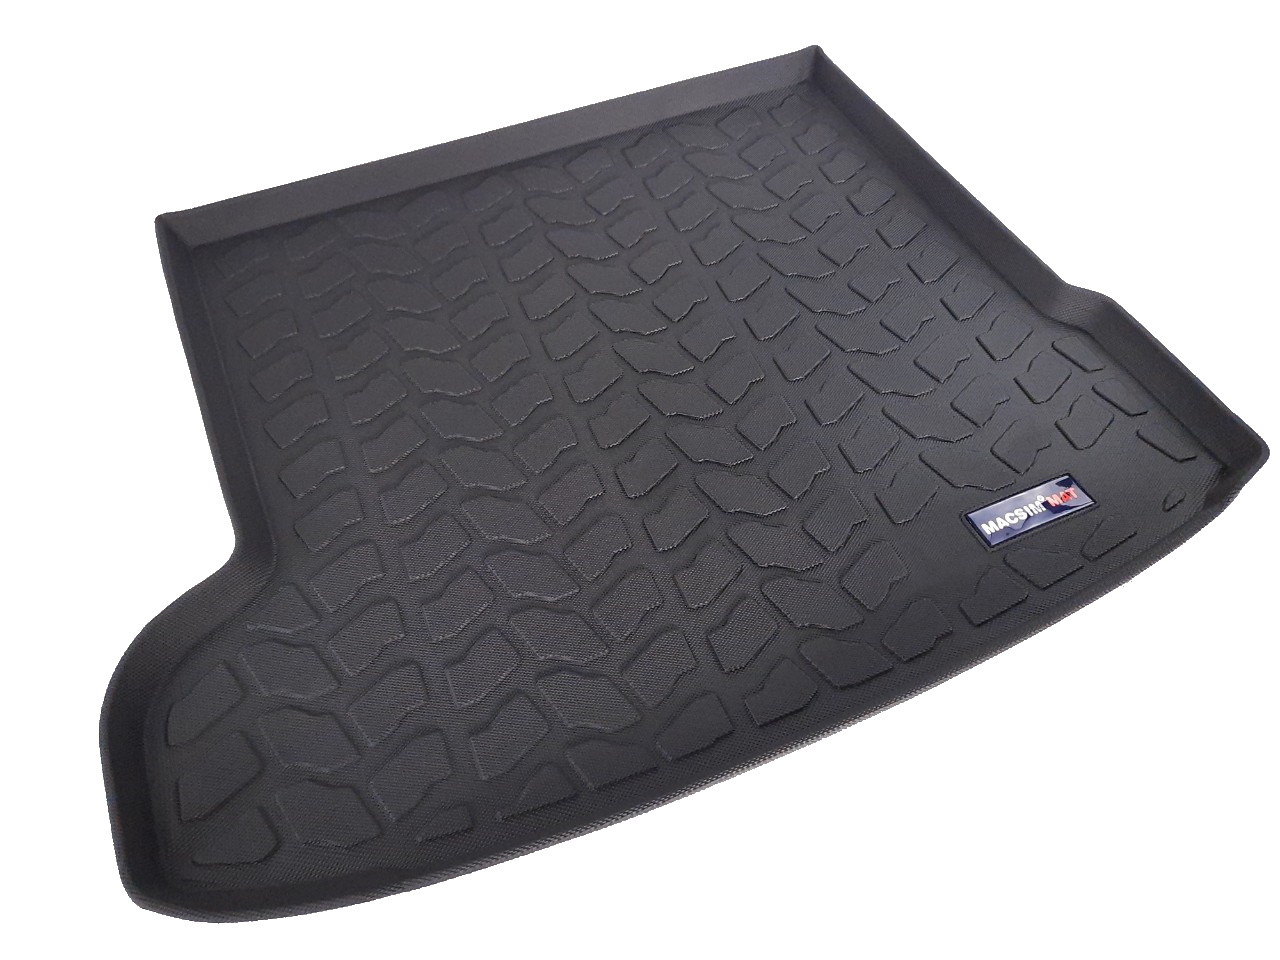 Thảm lót cốp xe ô tô JAGUAR F PACE 2015- nhãn hiệu Macsim chất liệu TPV màu be,màu đen.